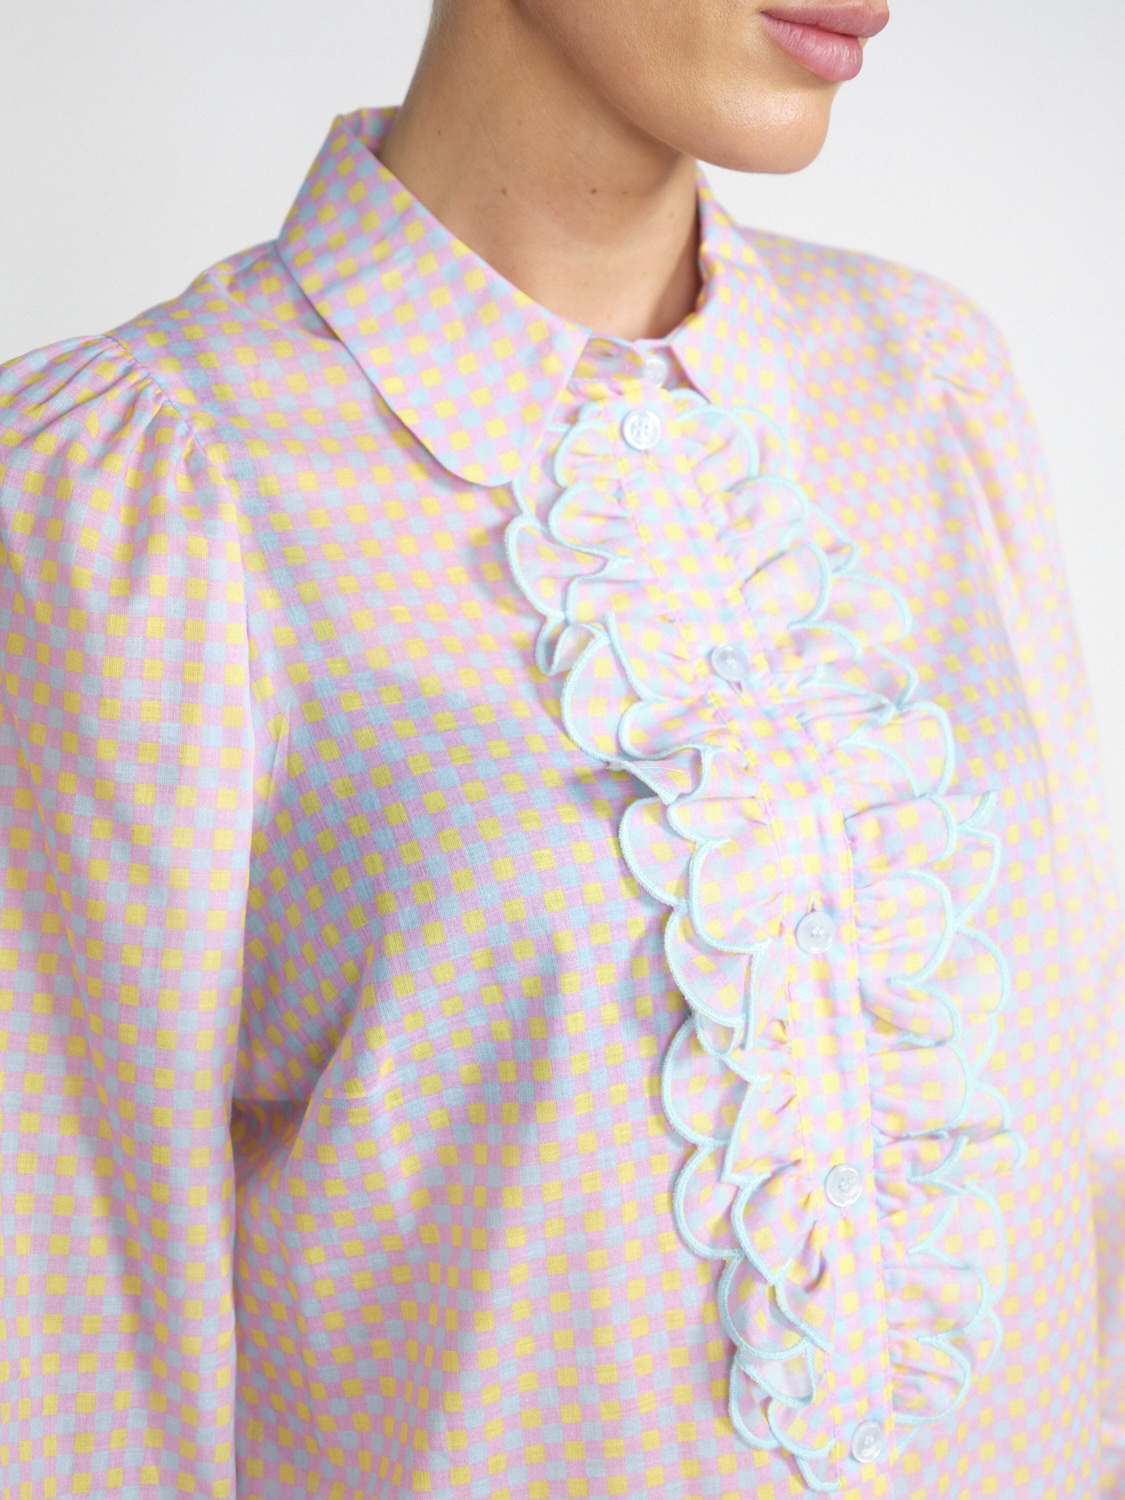 Maison Common Baumwoll-Bluse mit Schachbrett-Muster und Rüschen-Detail	  multi 36